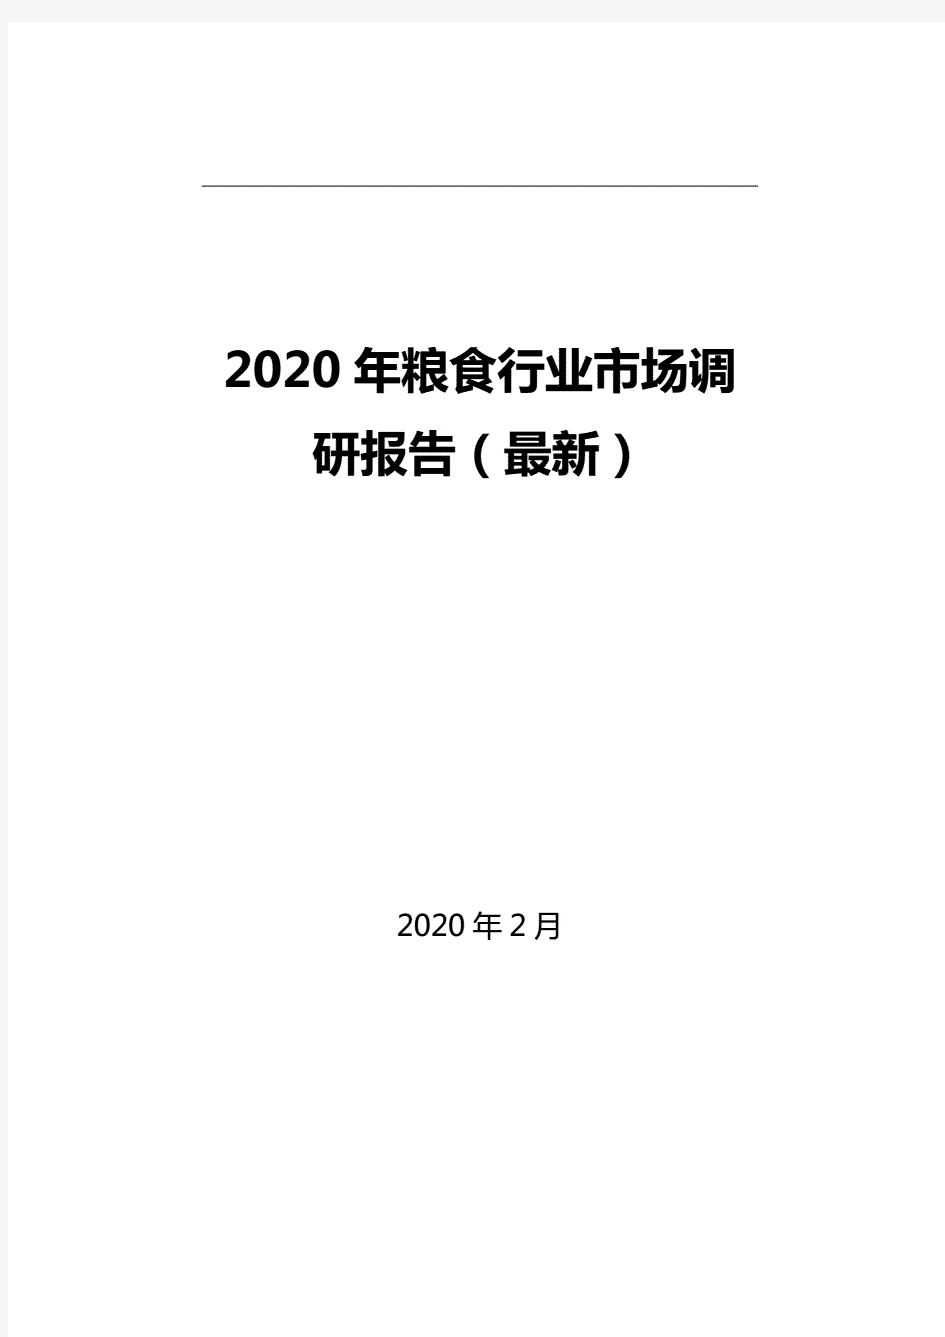 2020年粮食行业市场调研报告(最新).